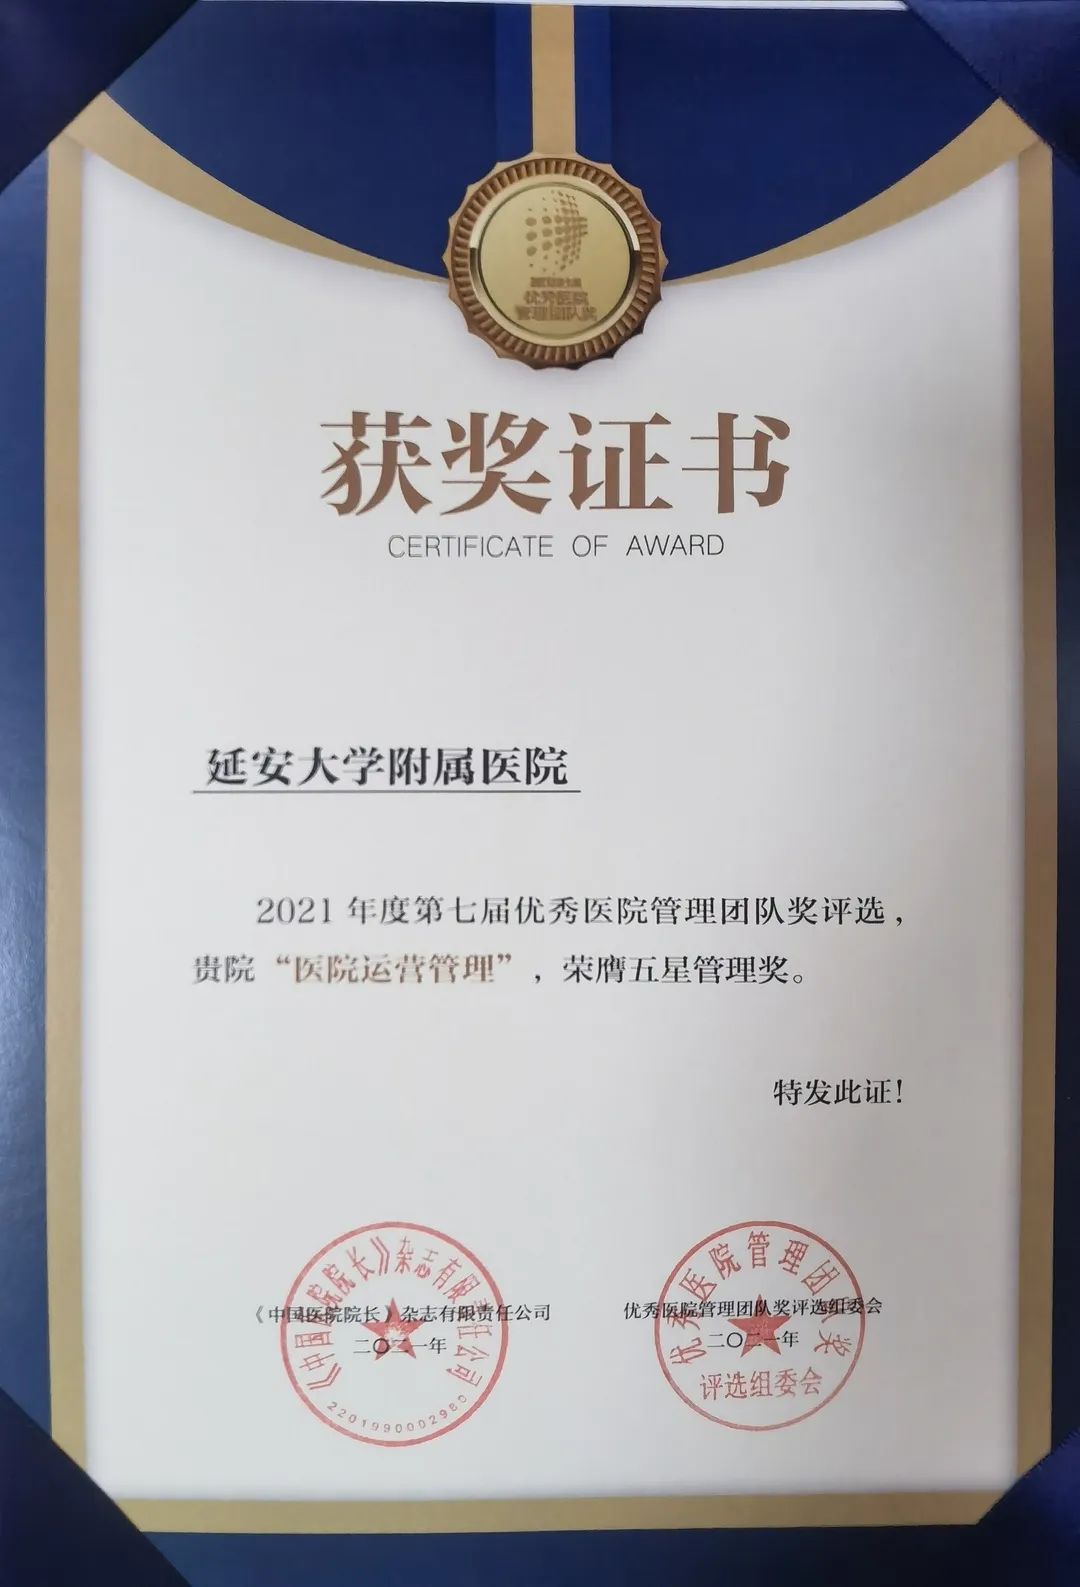 延安大学附属医院荣获《第十六届中国医院院长年会》2021 年度第七届优秀医院管理团队「众星成城奖」